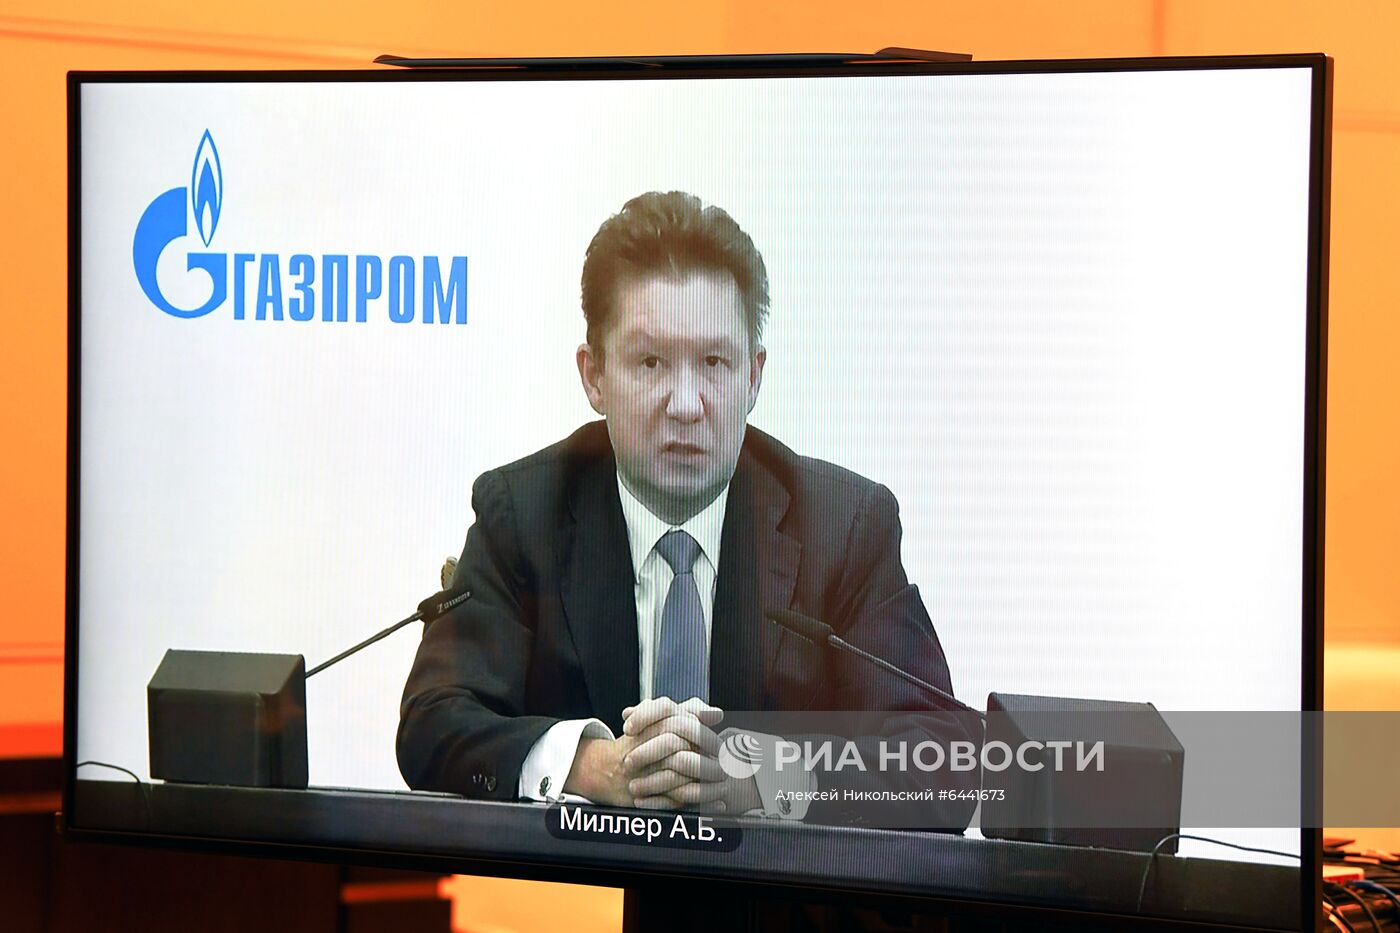 Президент РФ В. Путин провел встречу с главой "Газпрома" А. Миллером